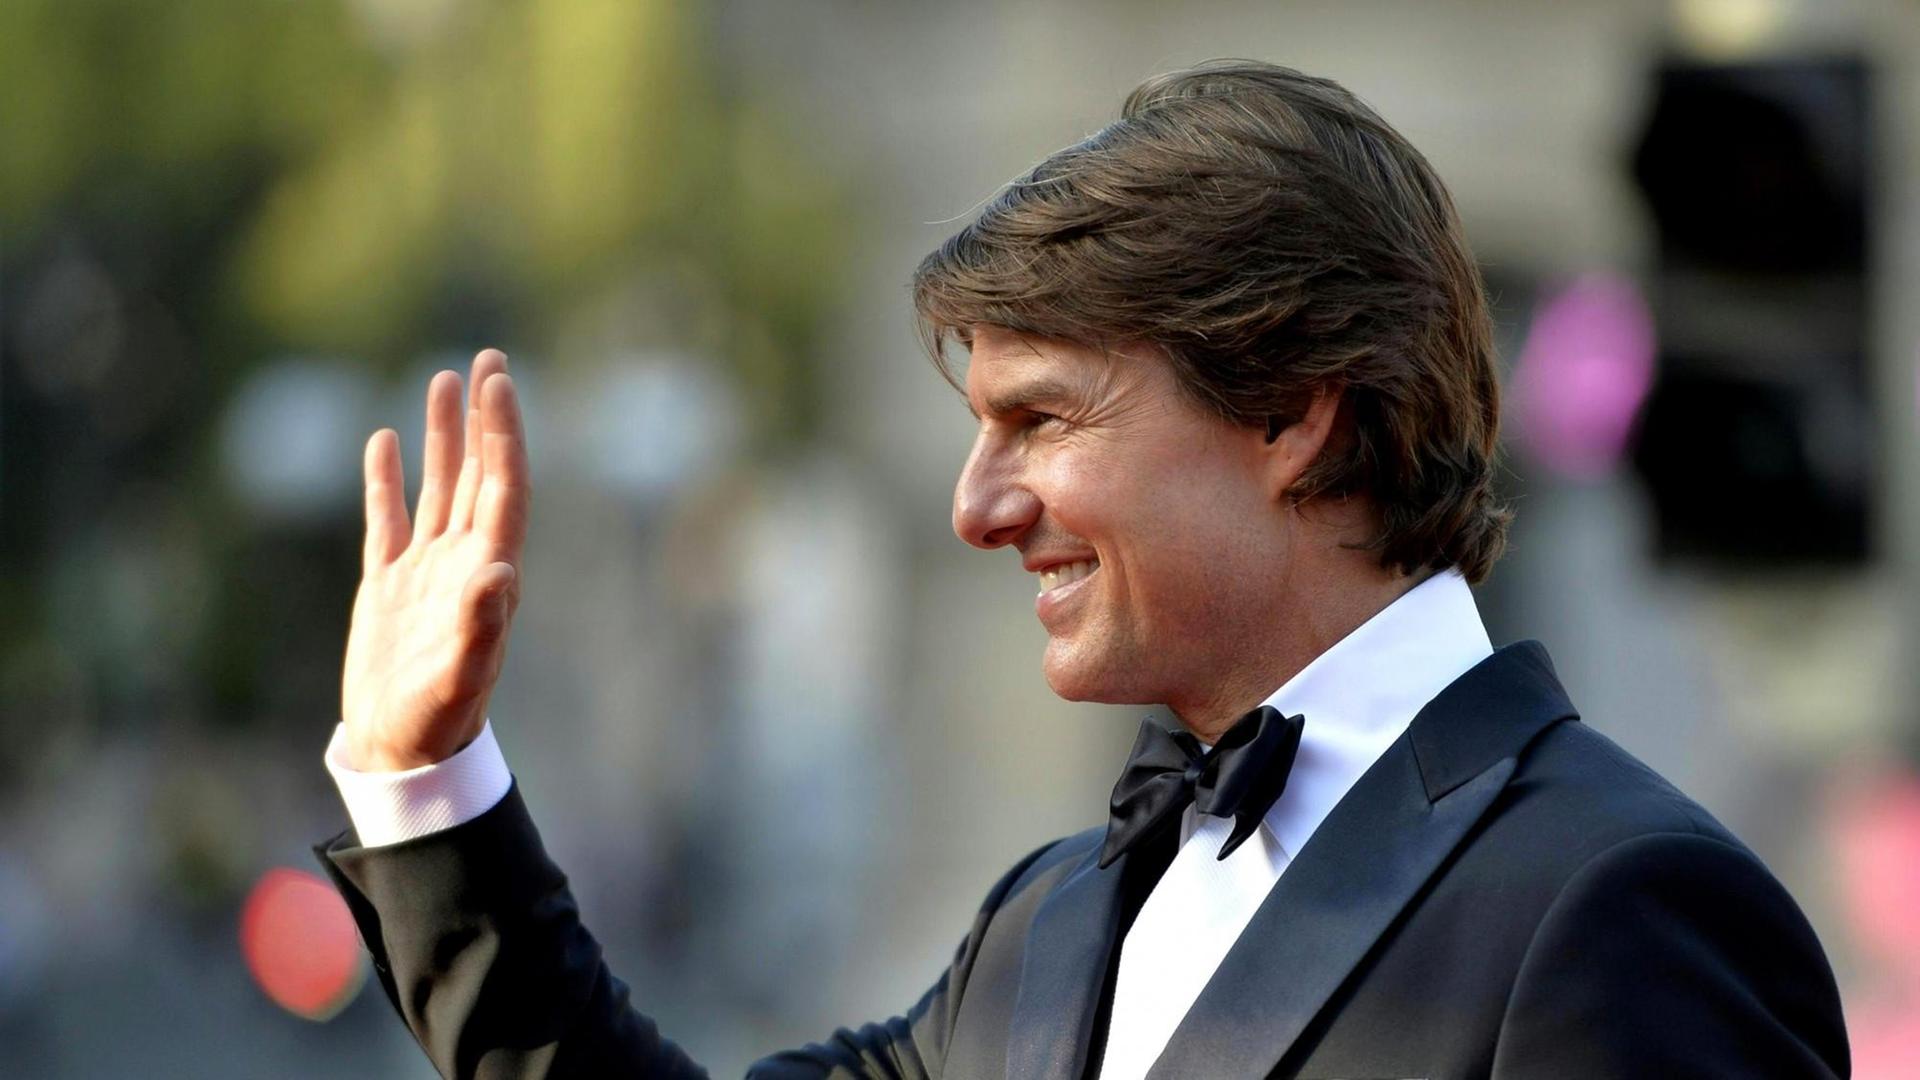 Schauspieler Tom Cruise bei der Premiere von "Mission: Impossible - Rogue Nation" in Wien